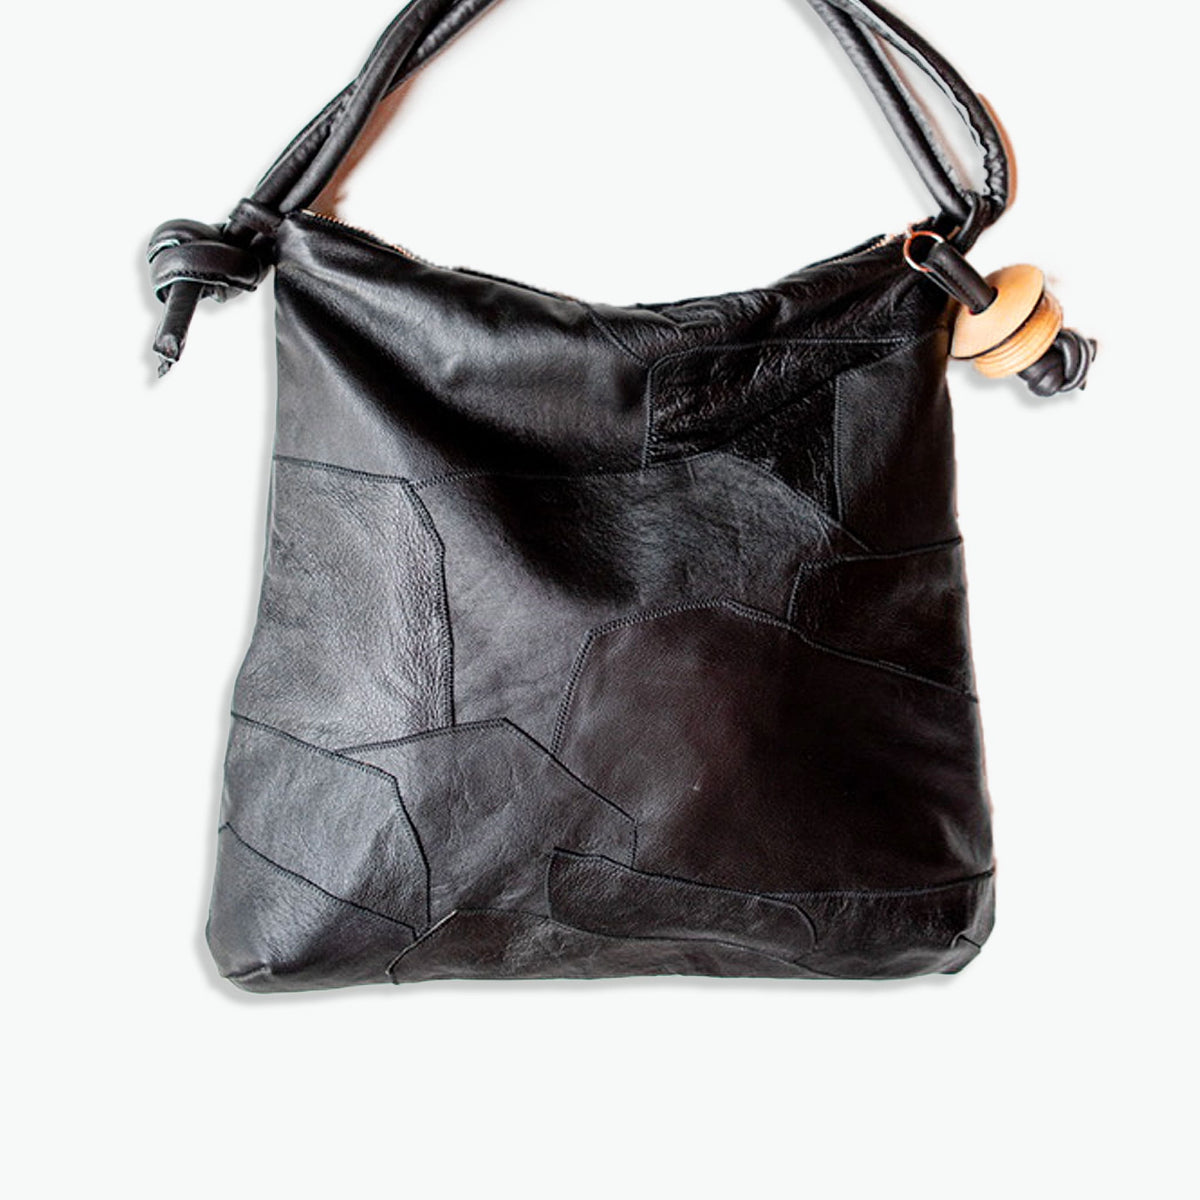 Handbags – Love Mert